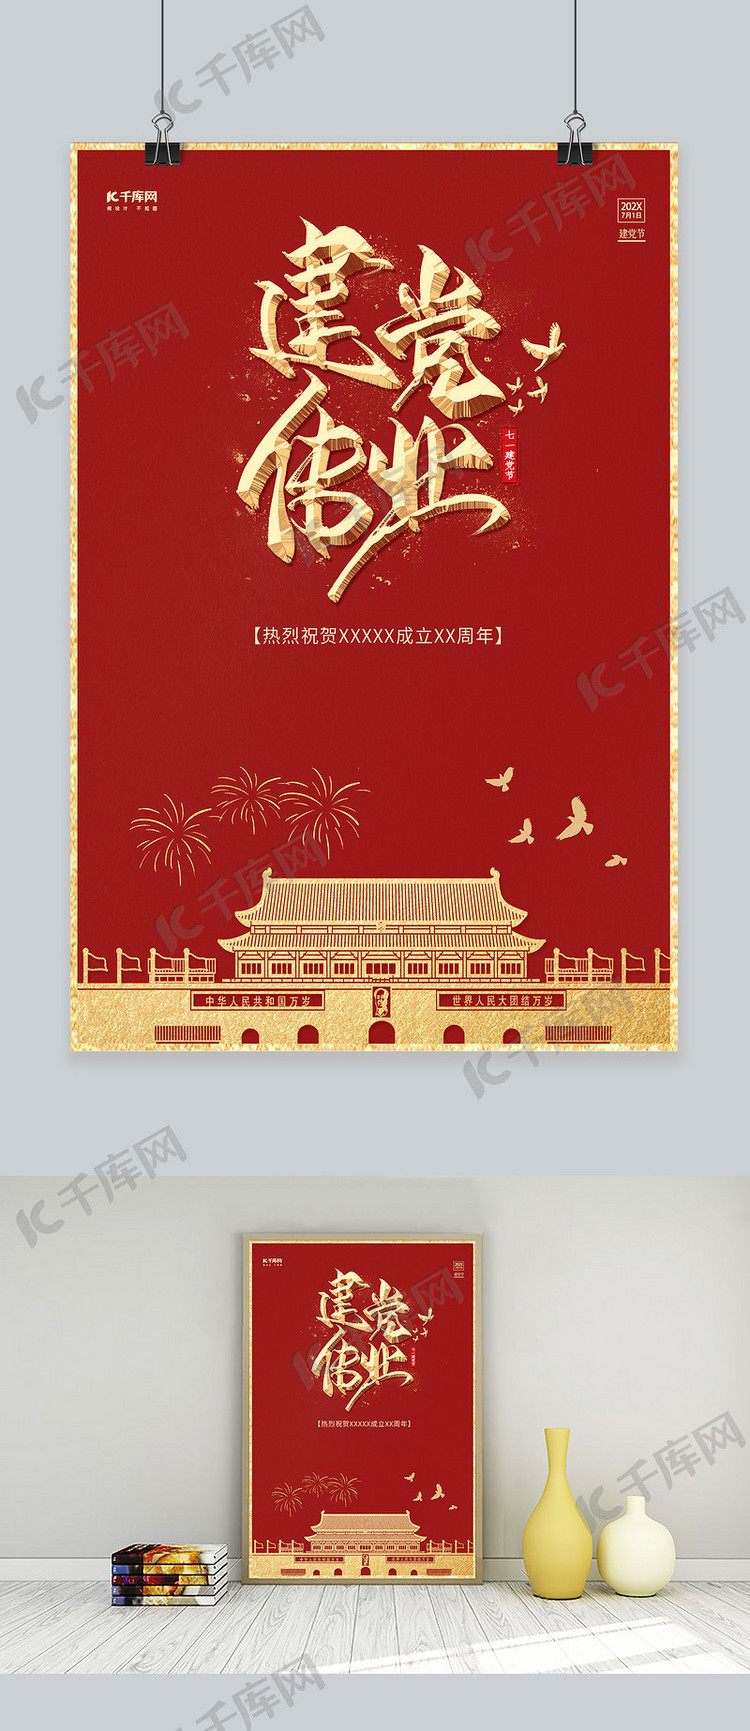 建党伟业中国红98周年节日海报模板